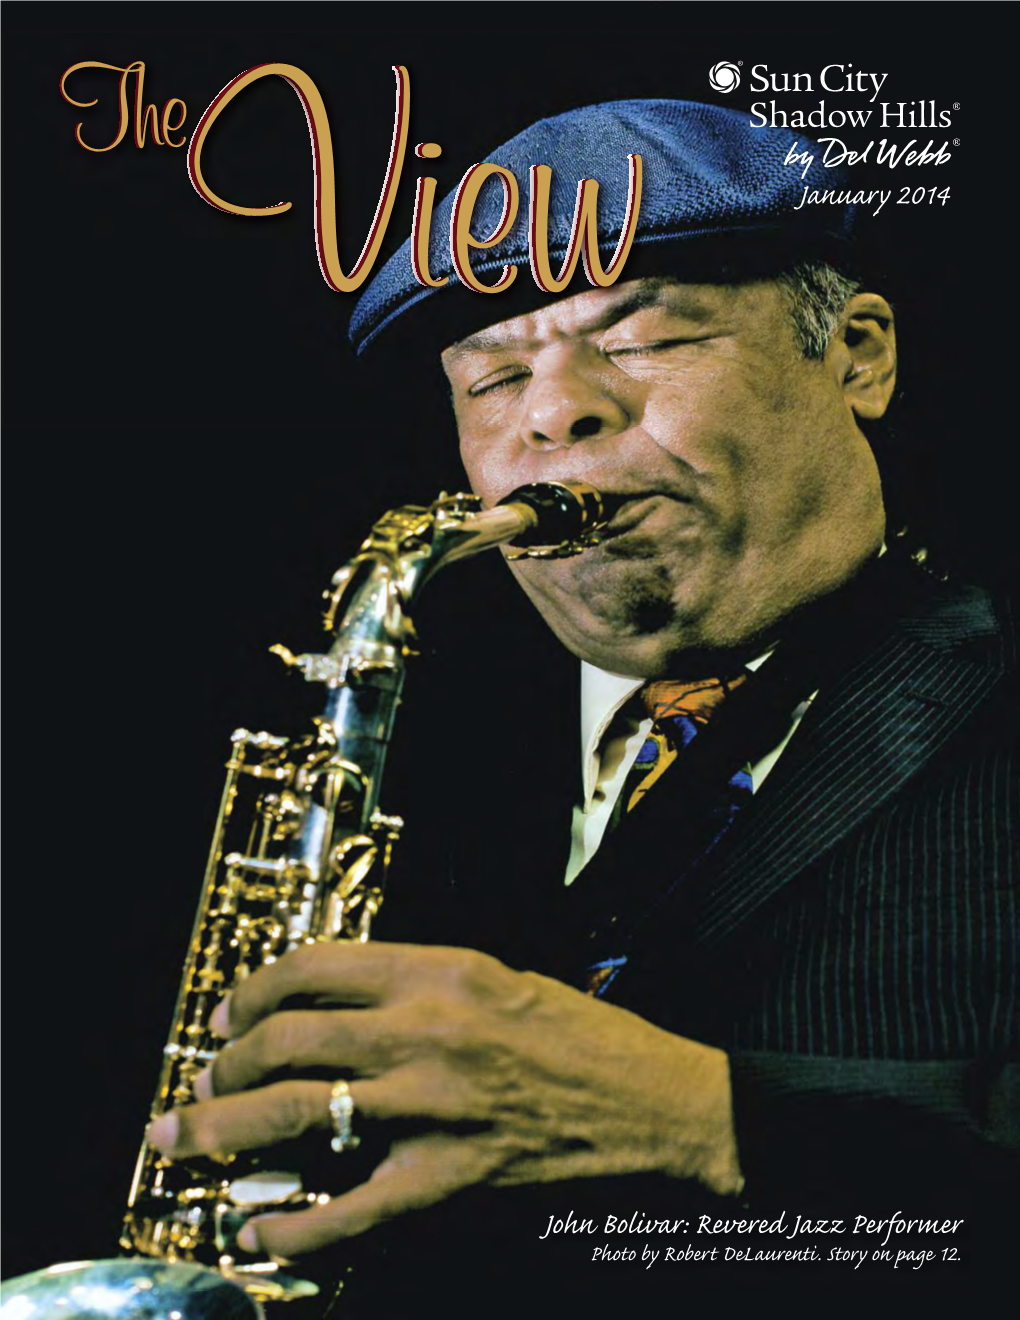 John Bolivar: Revered Jazz Performer Photo by Robert Delaurenti